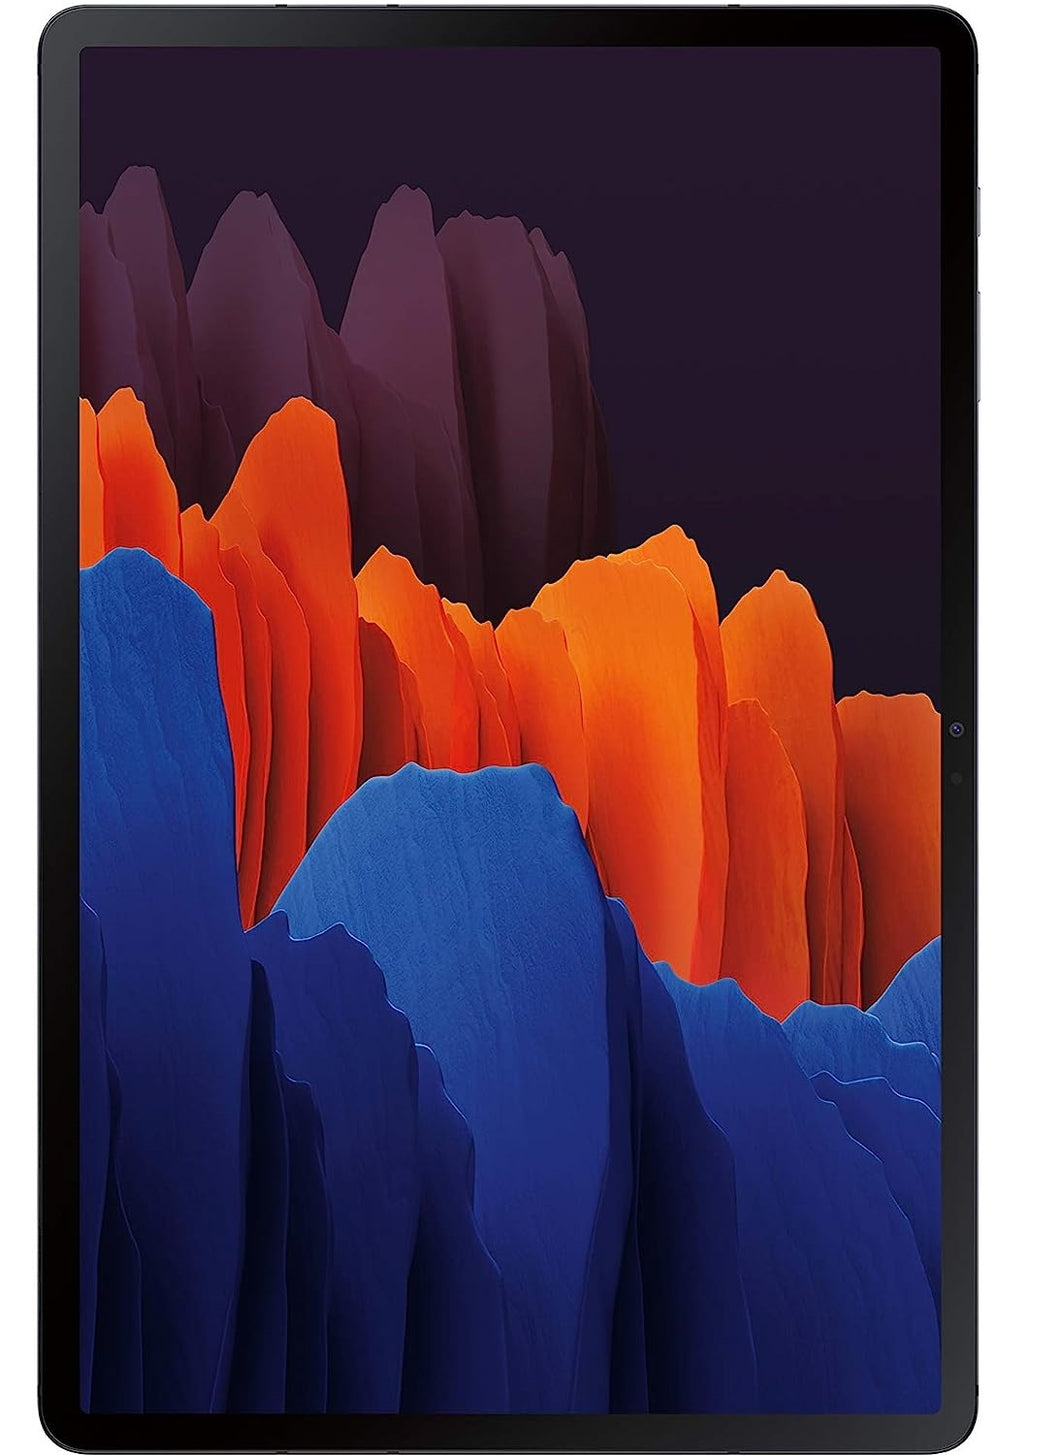 Galaxy Tab S7 Plus (2020) 512GB - Mystic Black - (Wi-Fi)